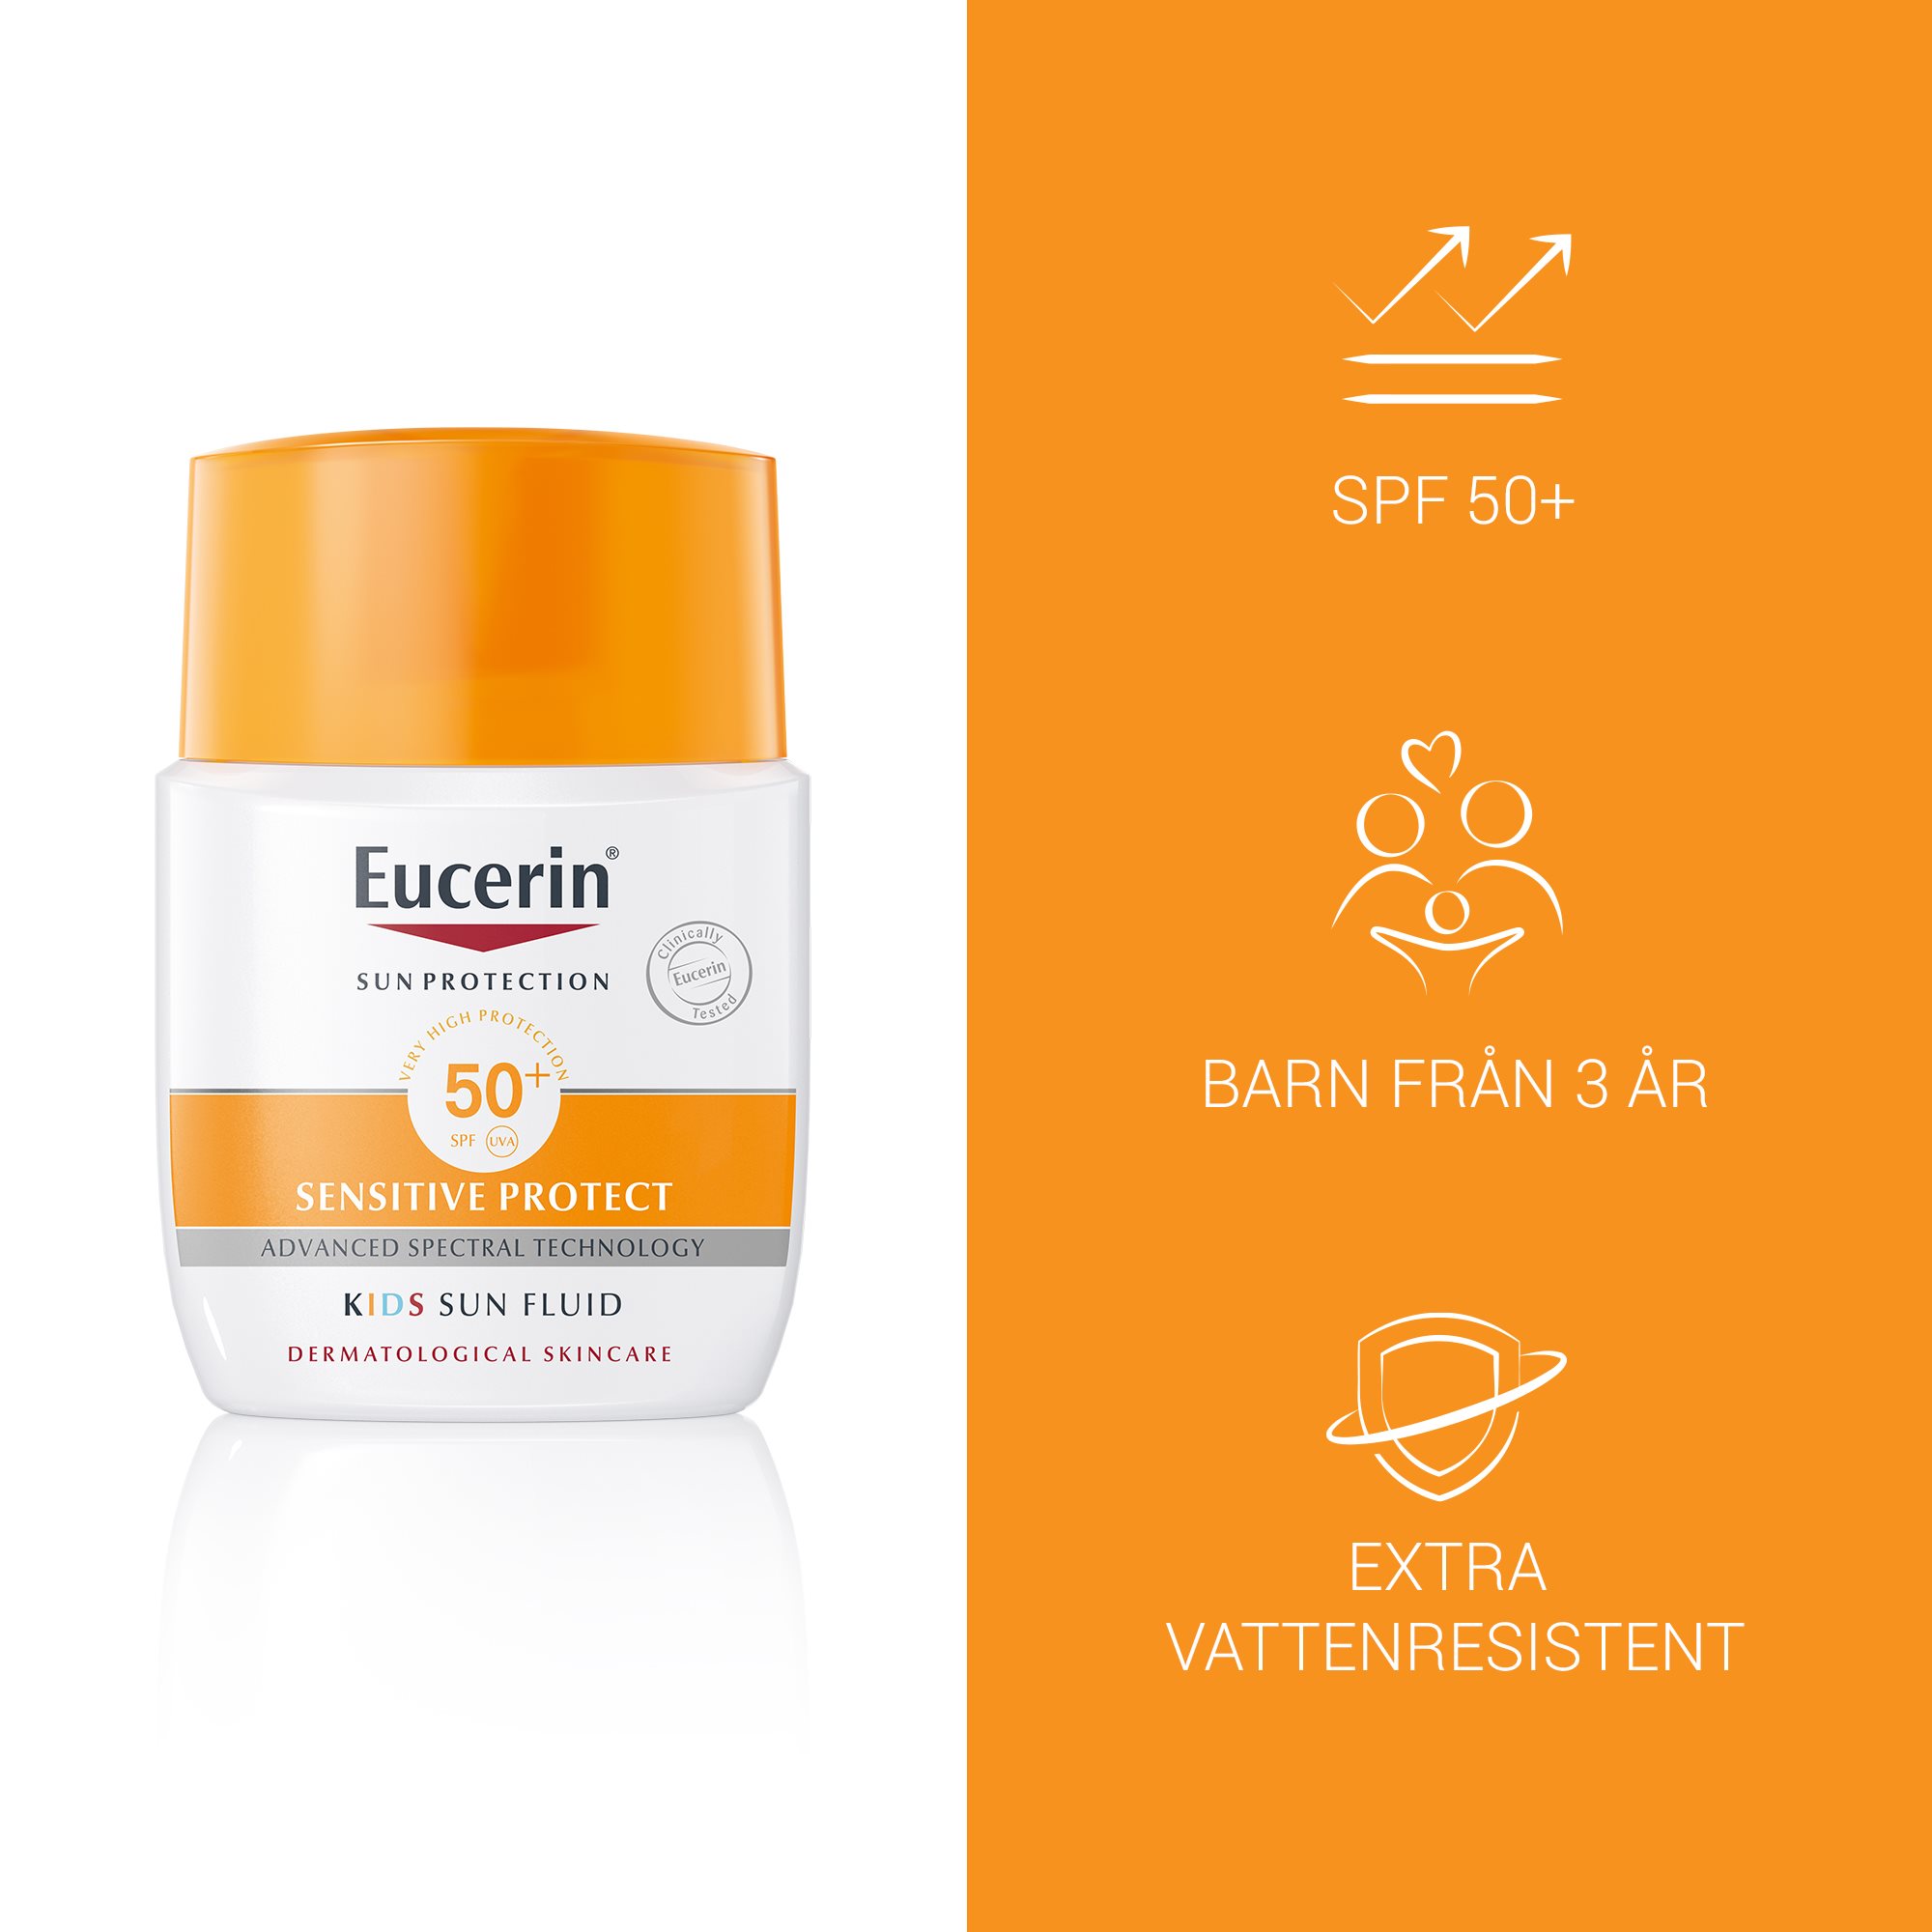 Bild med produktfördelarna med Eucerin Kids Sun Fluid Pocket SPF 50+, anpassad för barn från 3 år och extra vattenresistent